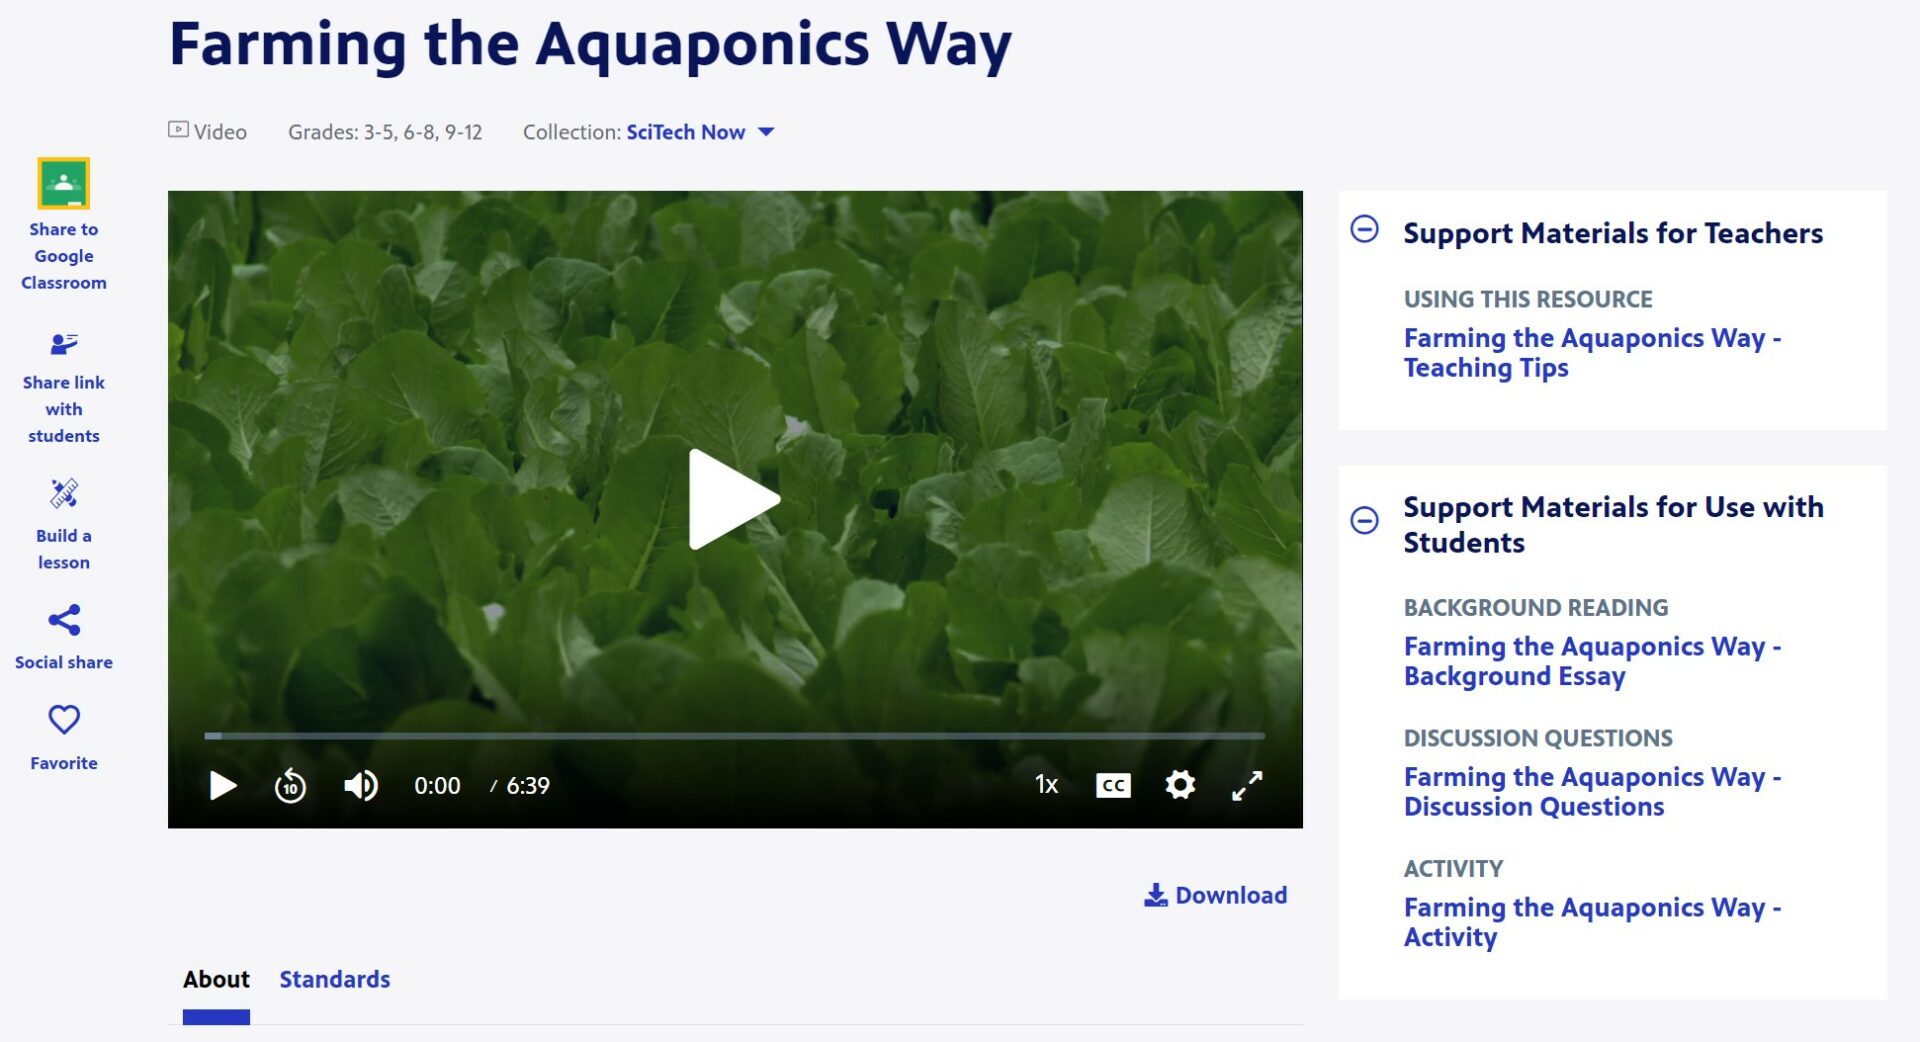 Farming the Aquaponics Way